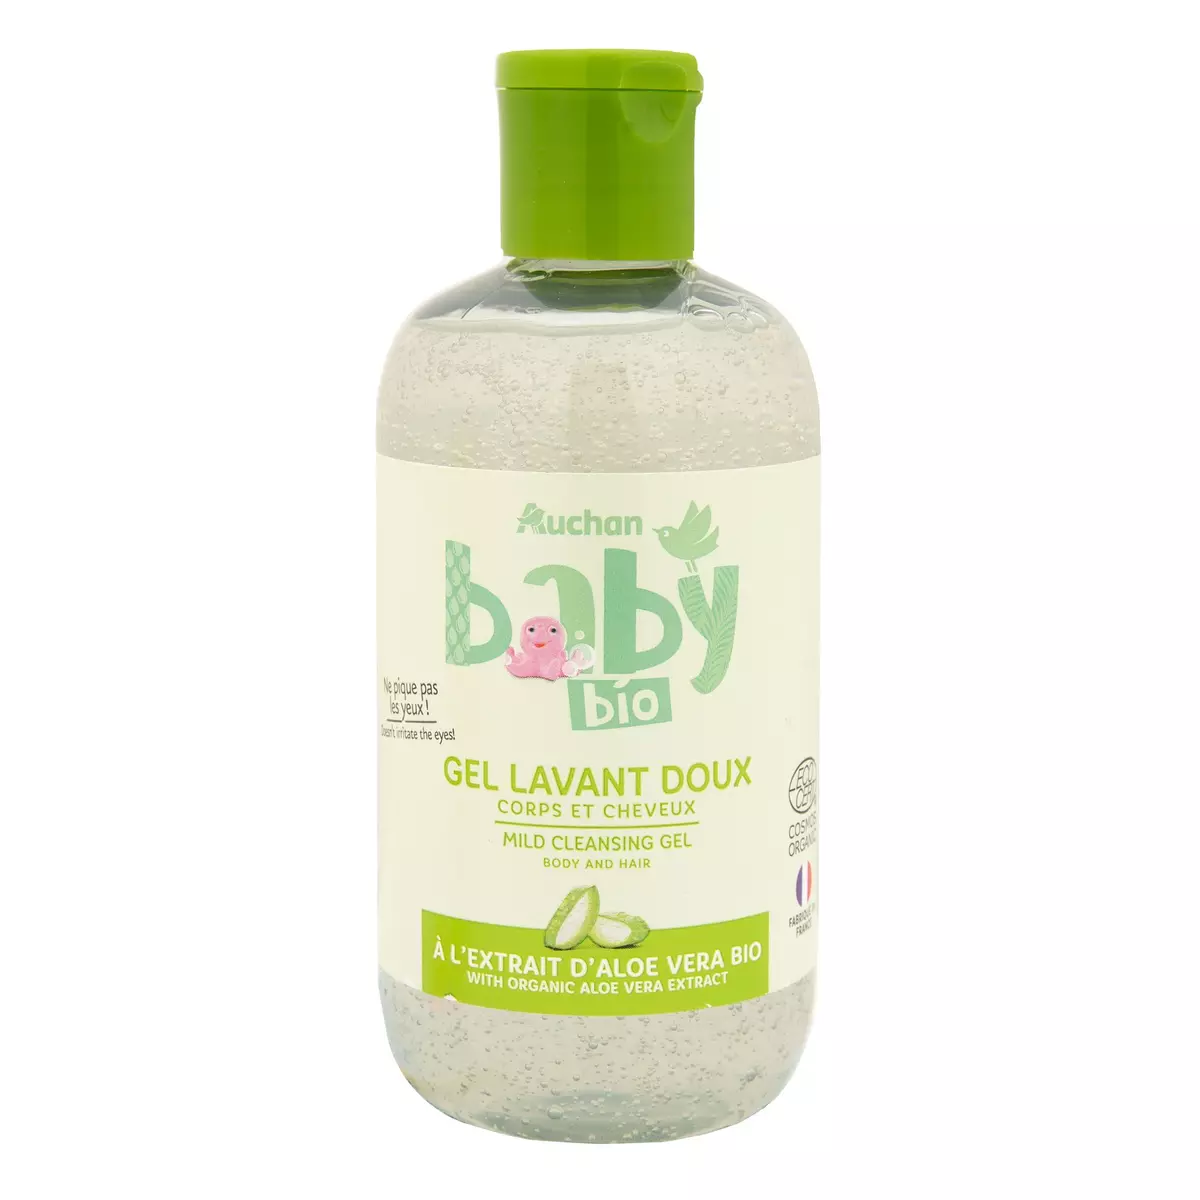 AUCHAN BABY BIO Gel lavant doux à l'aloé vera bio pour bébé 250ml